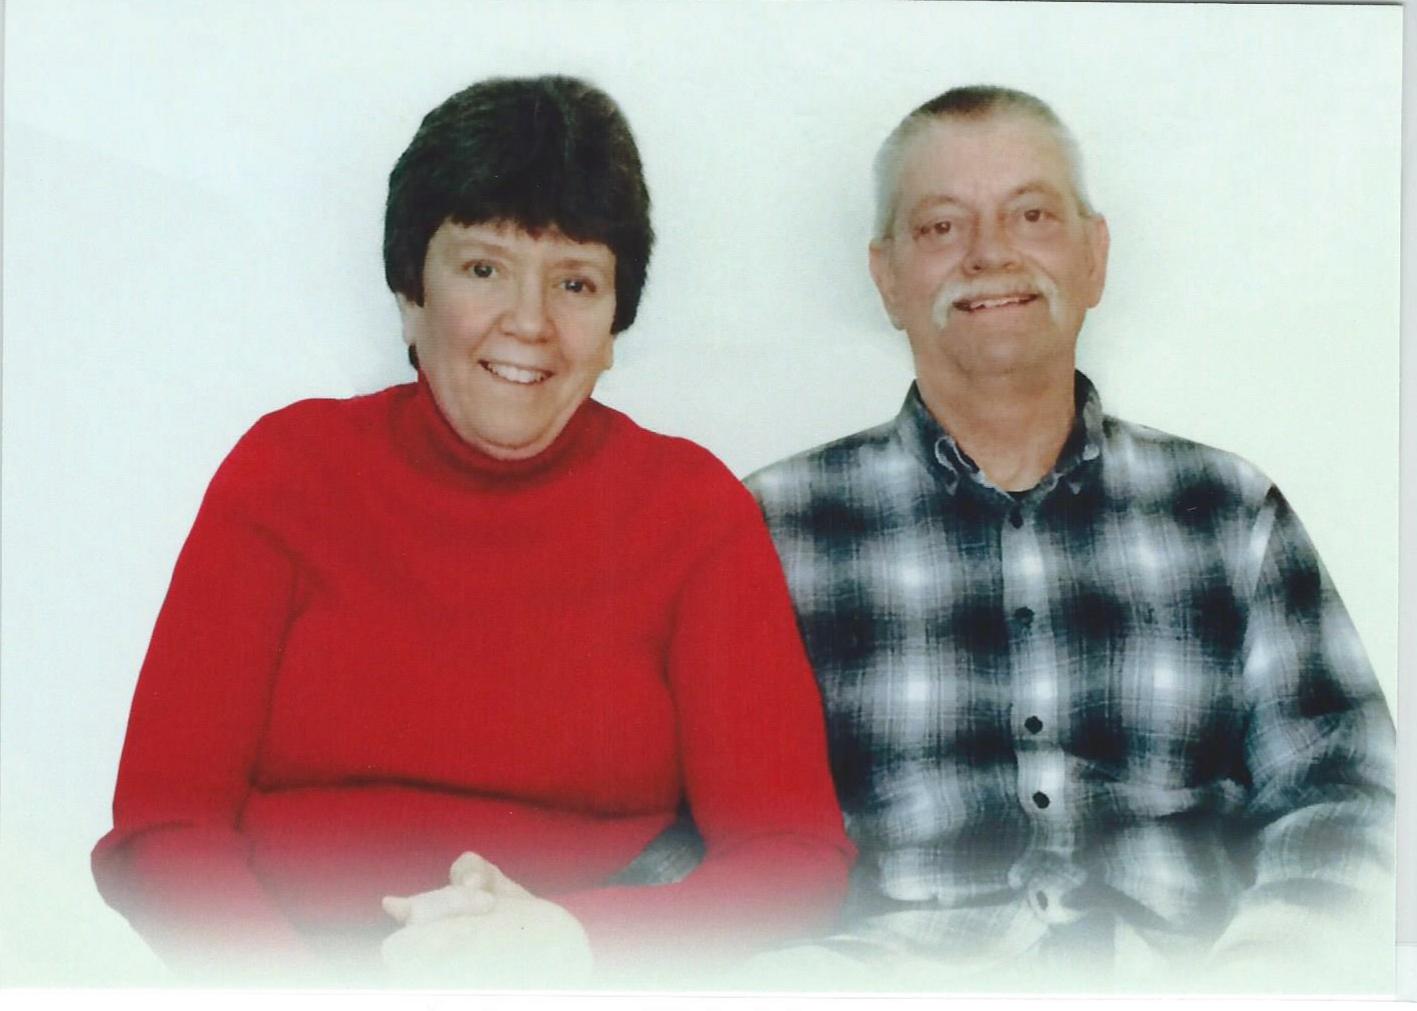 Linda Bauer and partner Dennis Charles Krause, April 2004